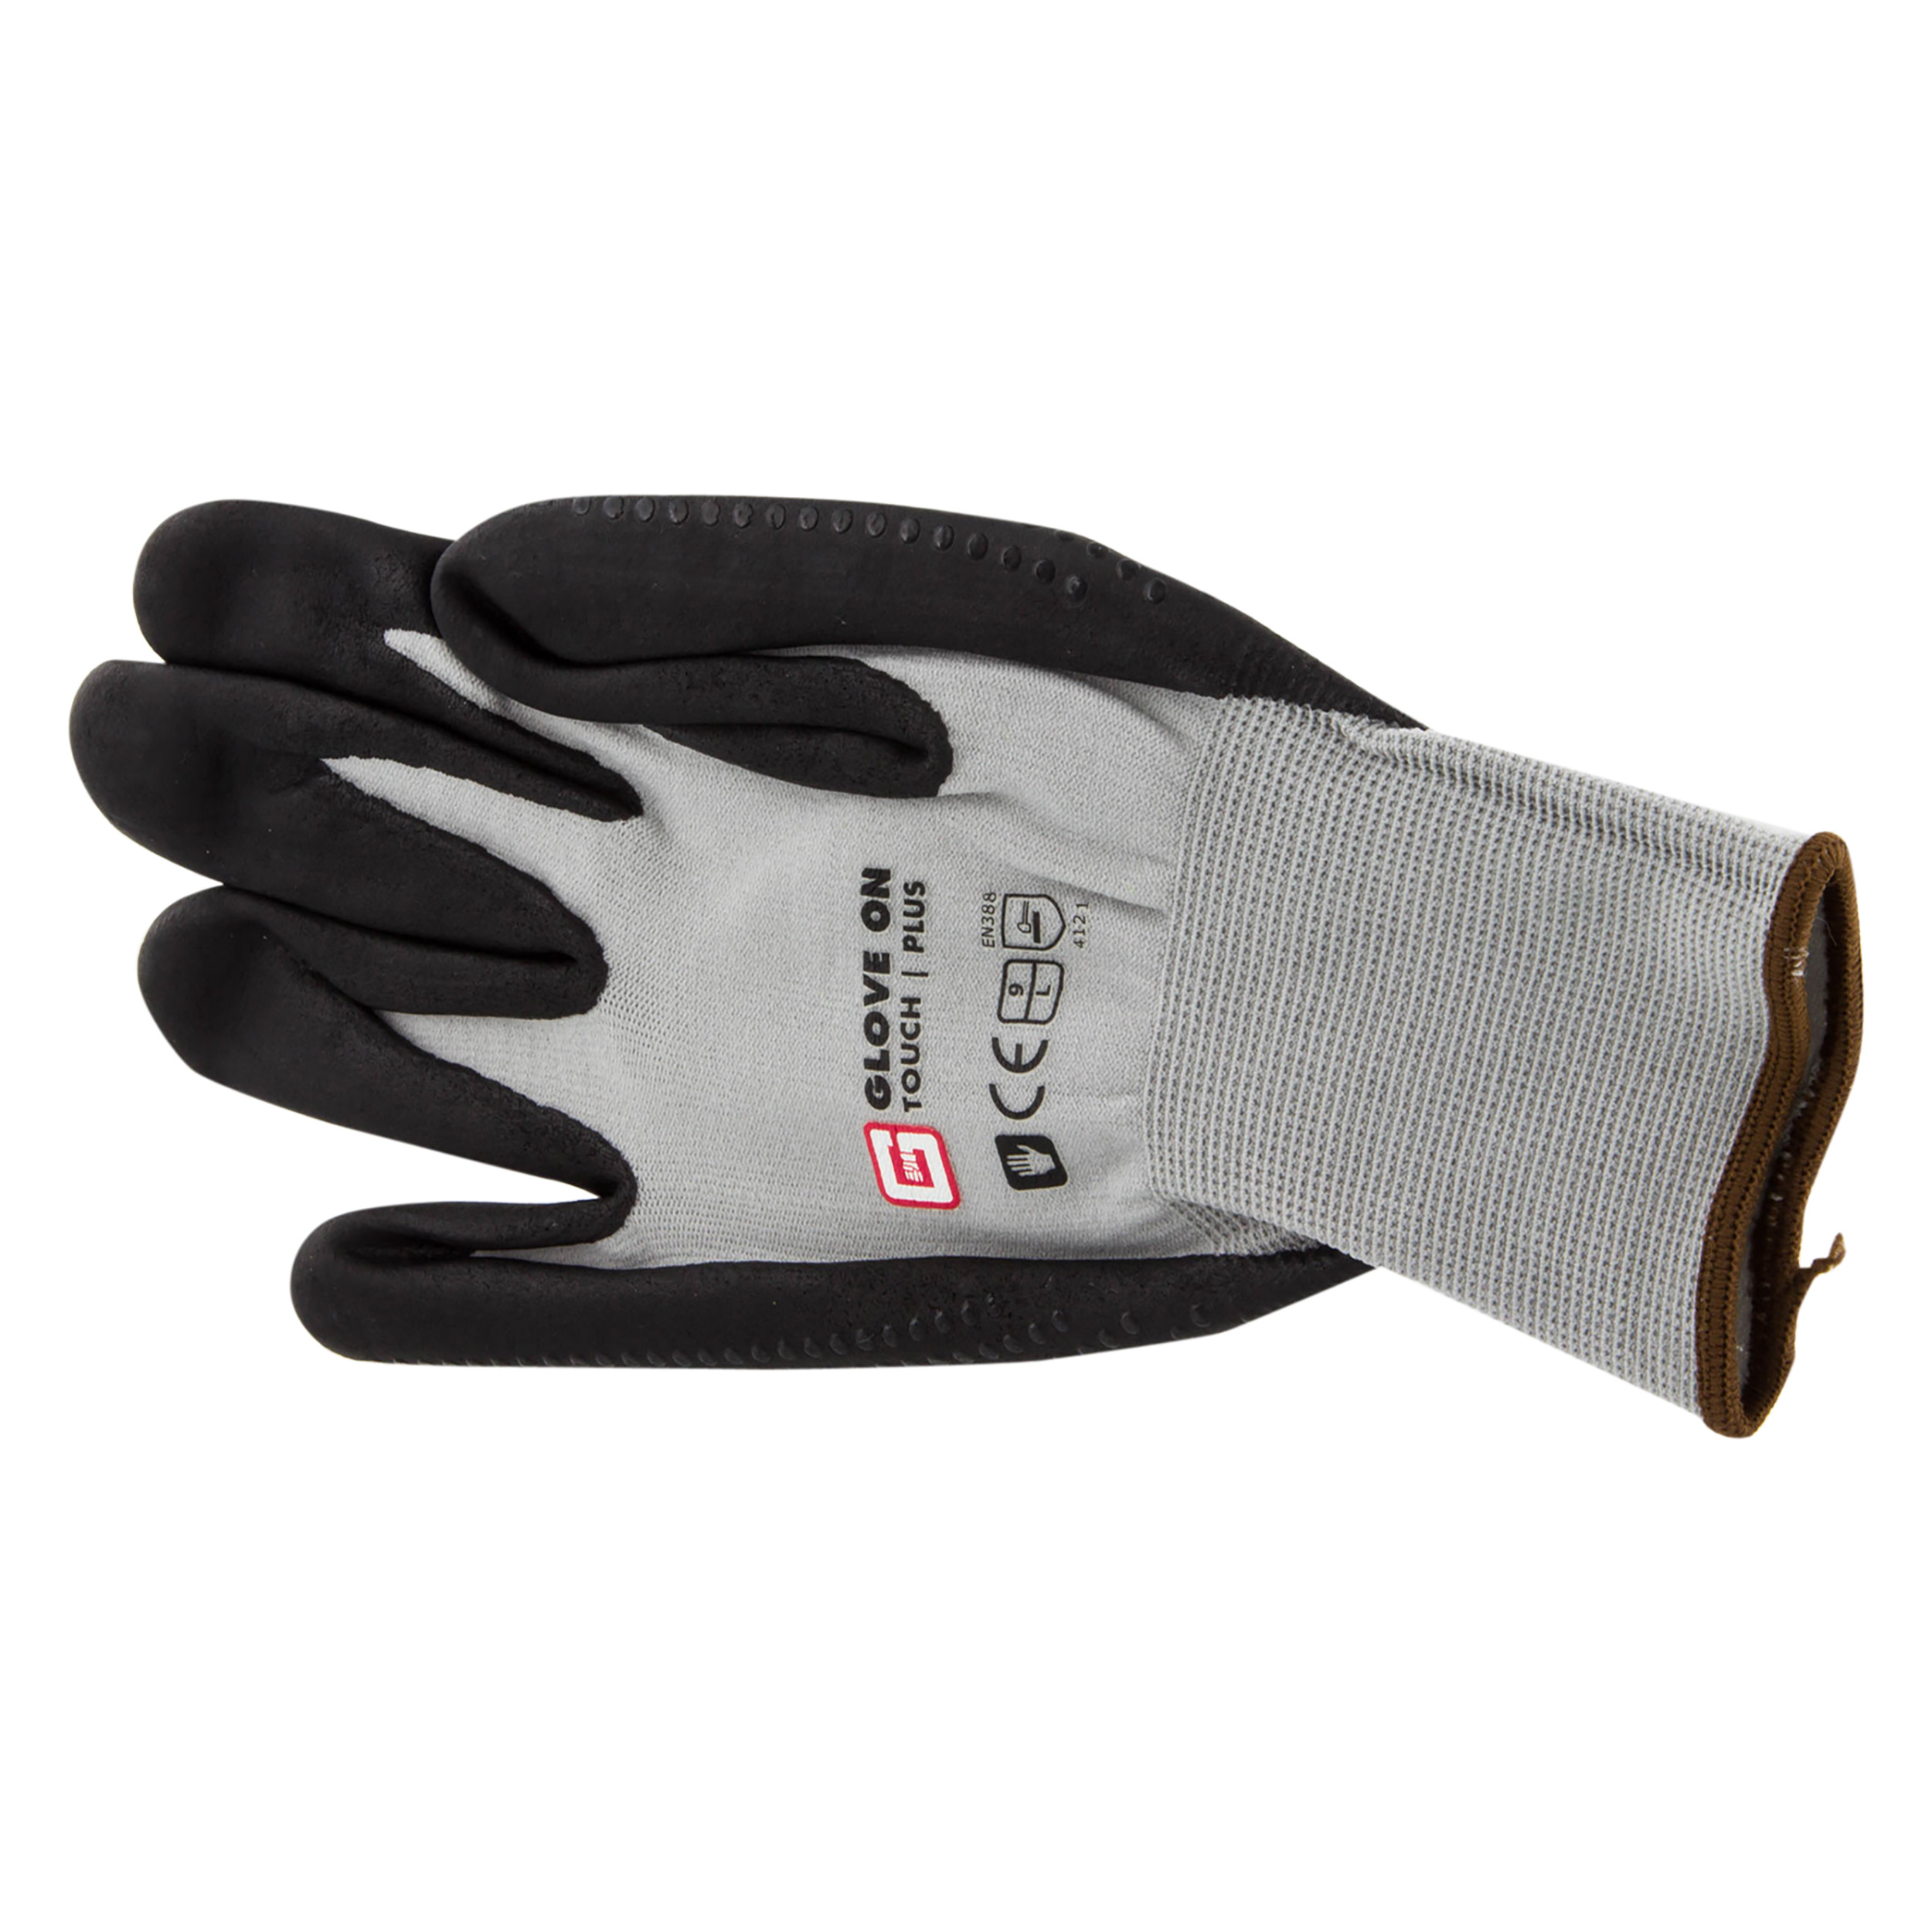 21.080.19 Glove On Touch werkhandschoen touch plus - L